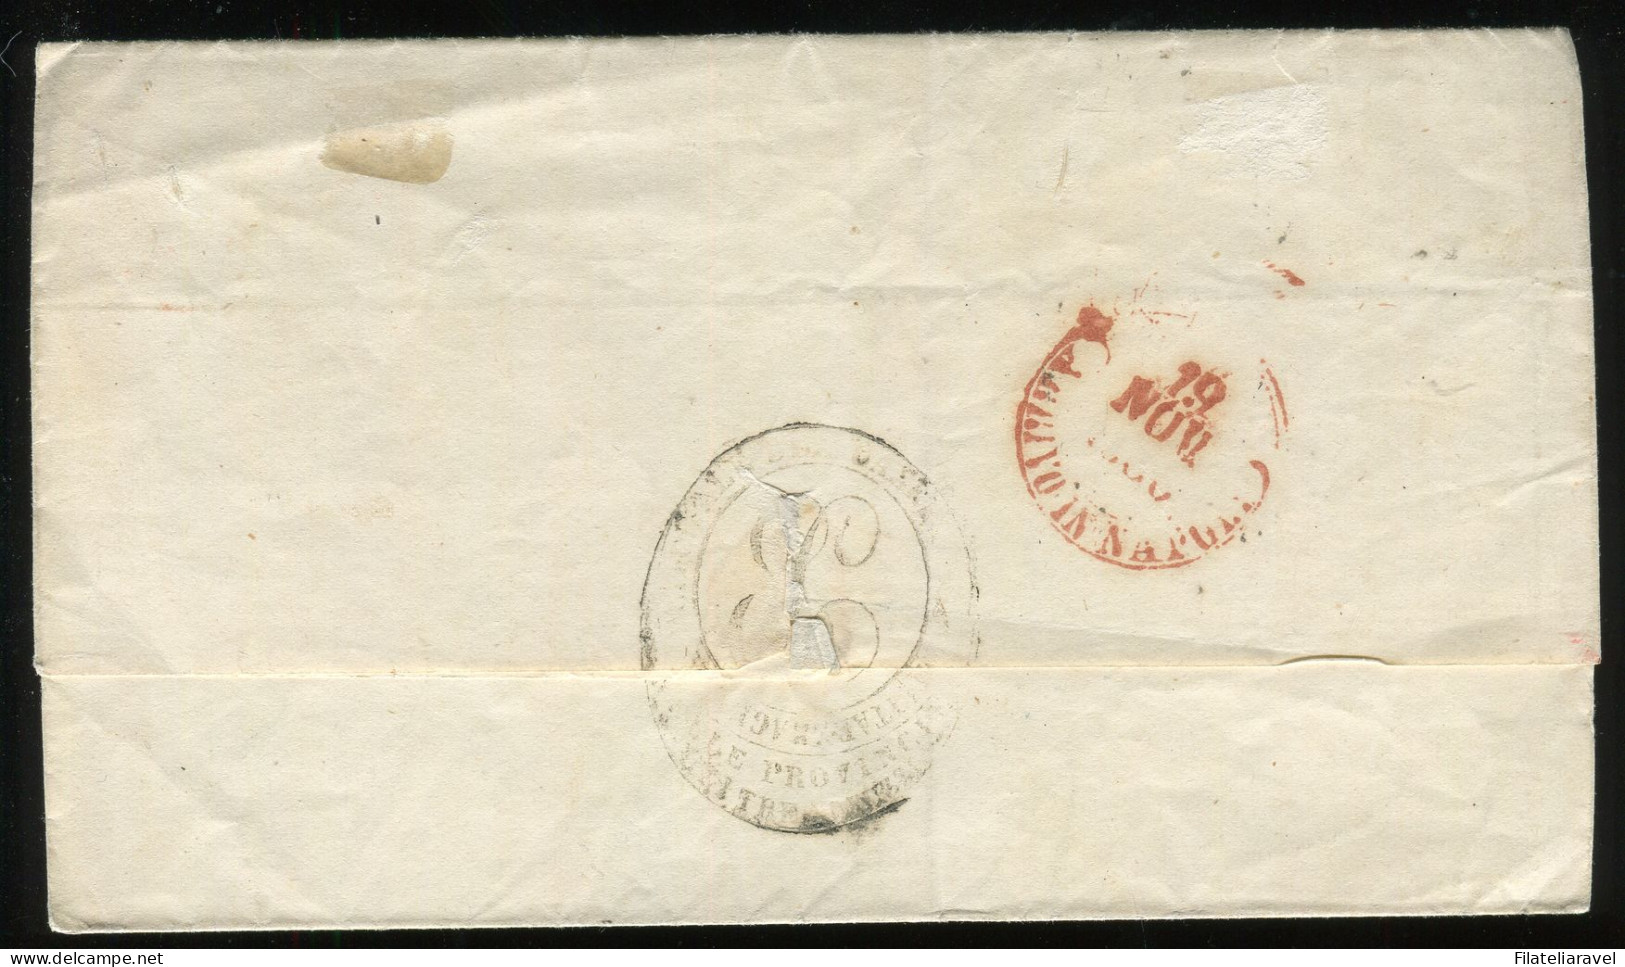 Ltr 1858 - Napoli - Lettera Da Aquila A Napoli, 2 Gr Rosa Chiaro II (6) Svolazzo Tipo 32 Punti 4, Viesti - Neapel